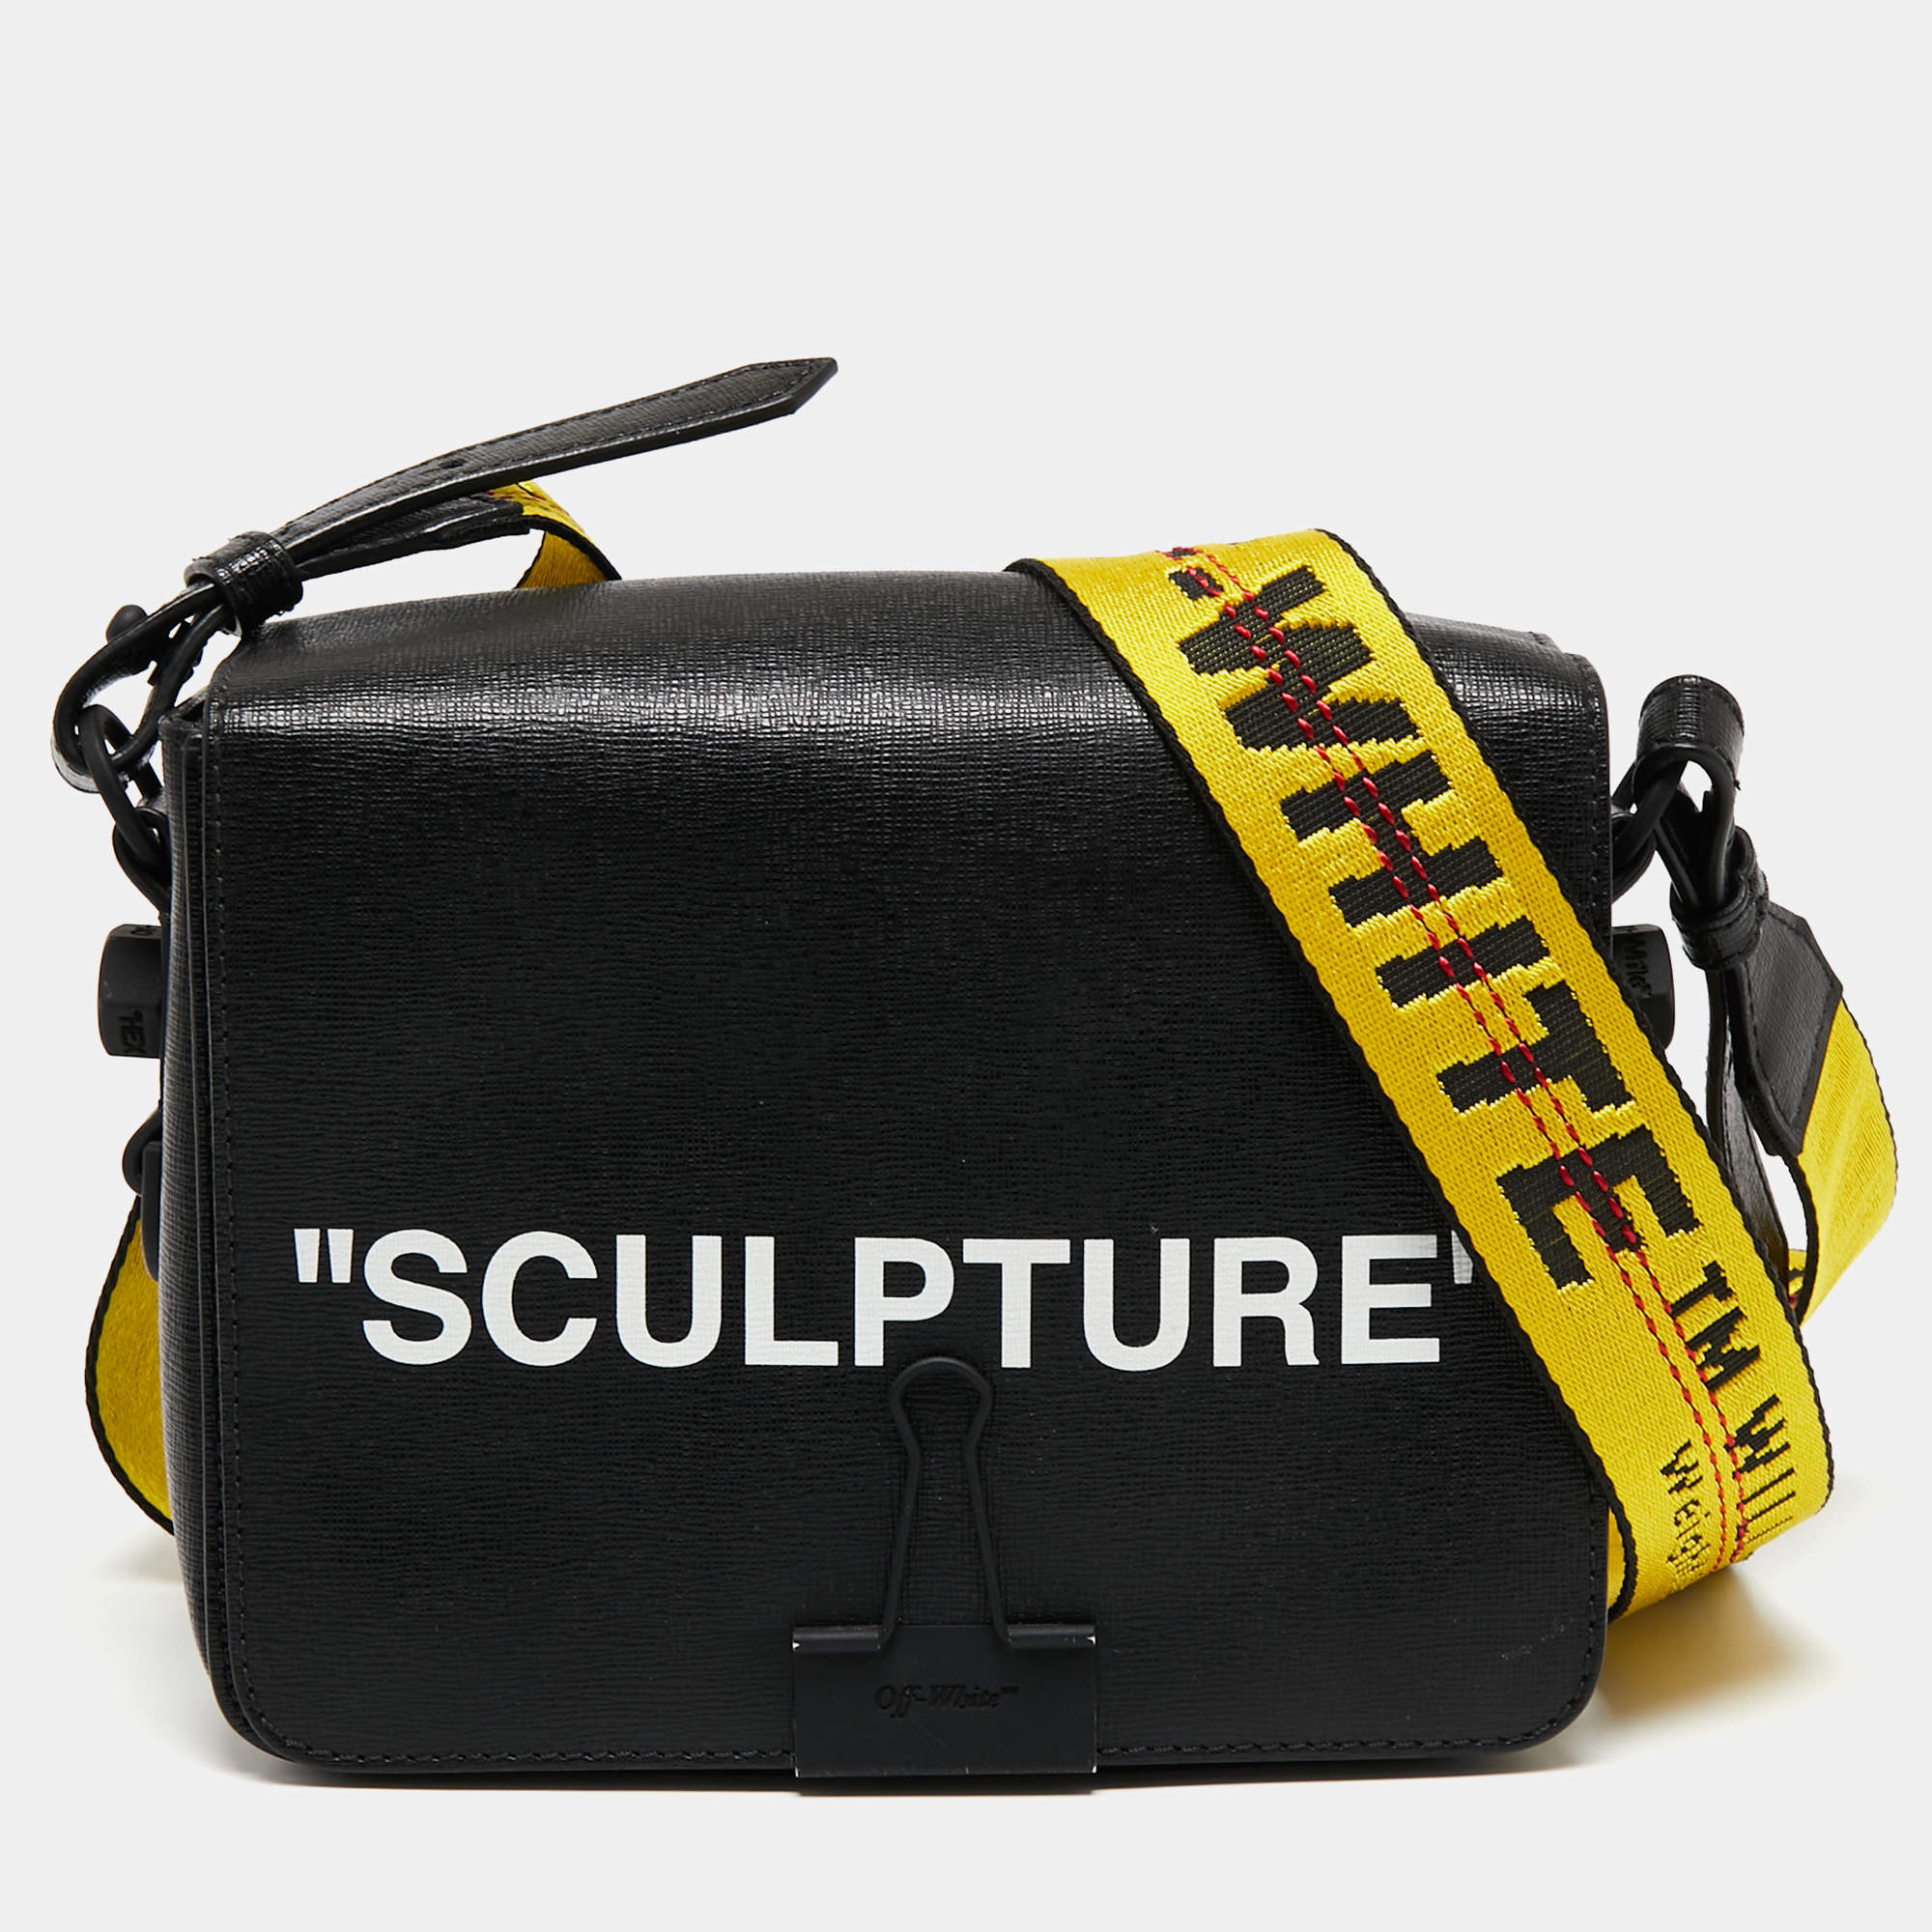 Off-White c/o Virgil Abloh Sculpture Shoulder Bag